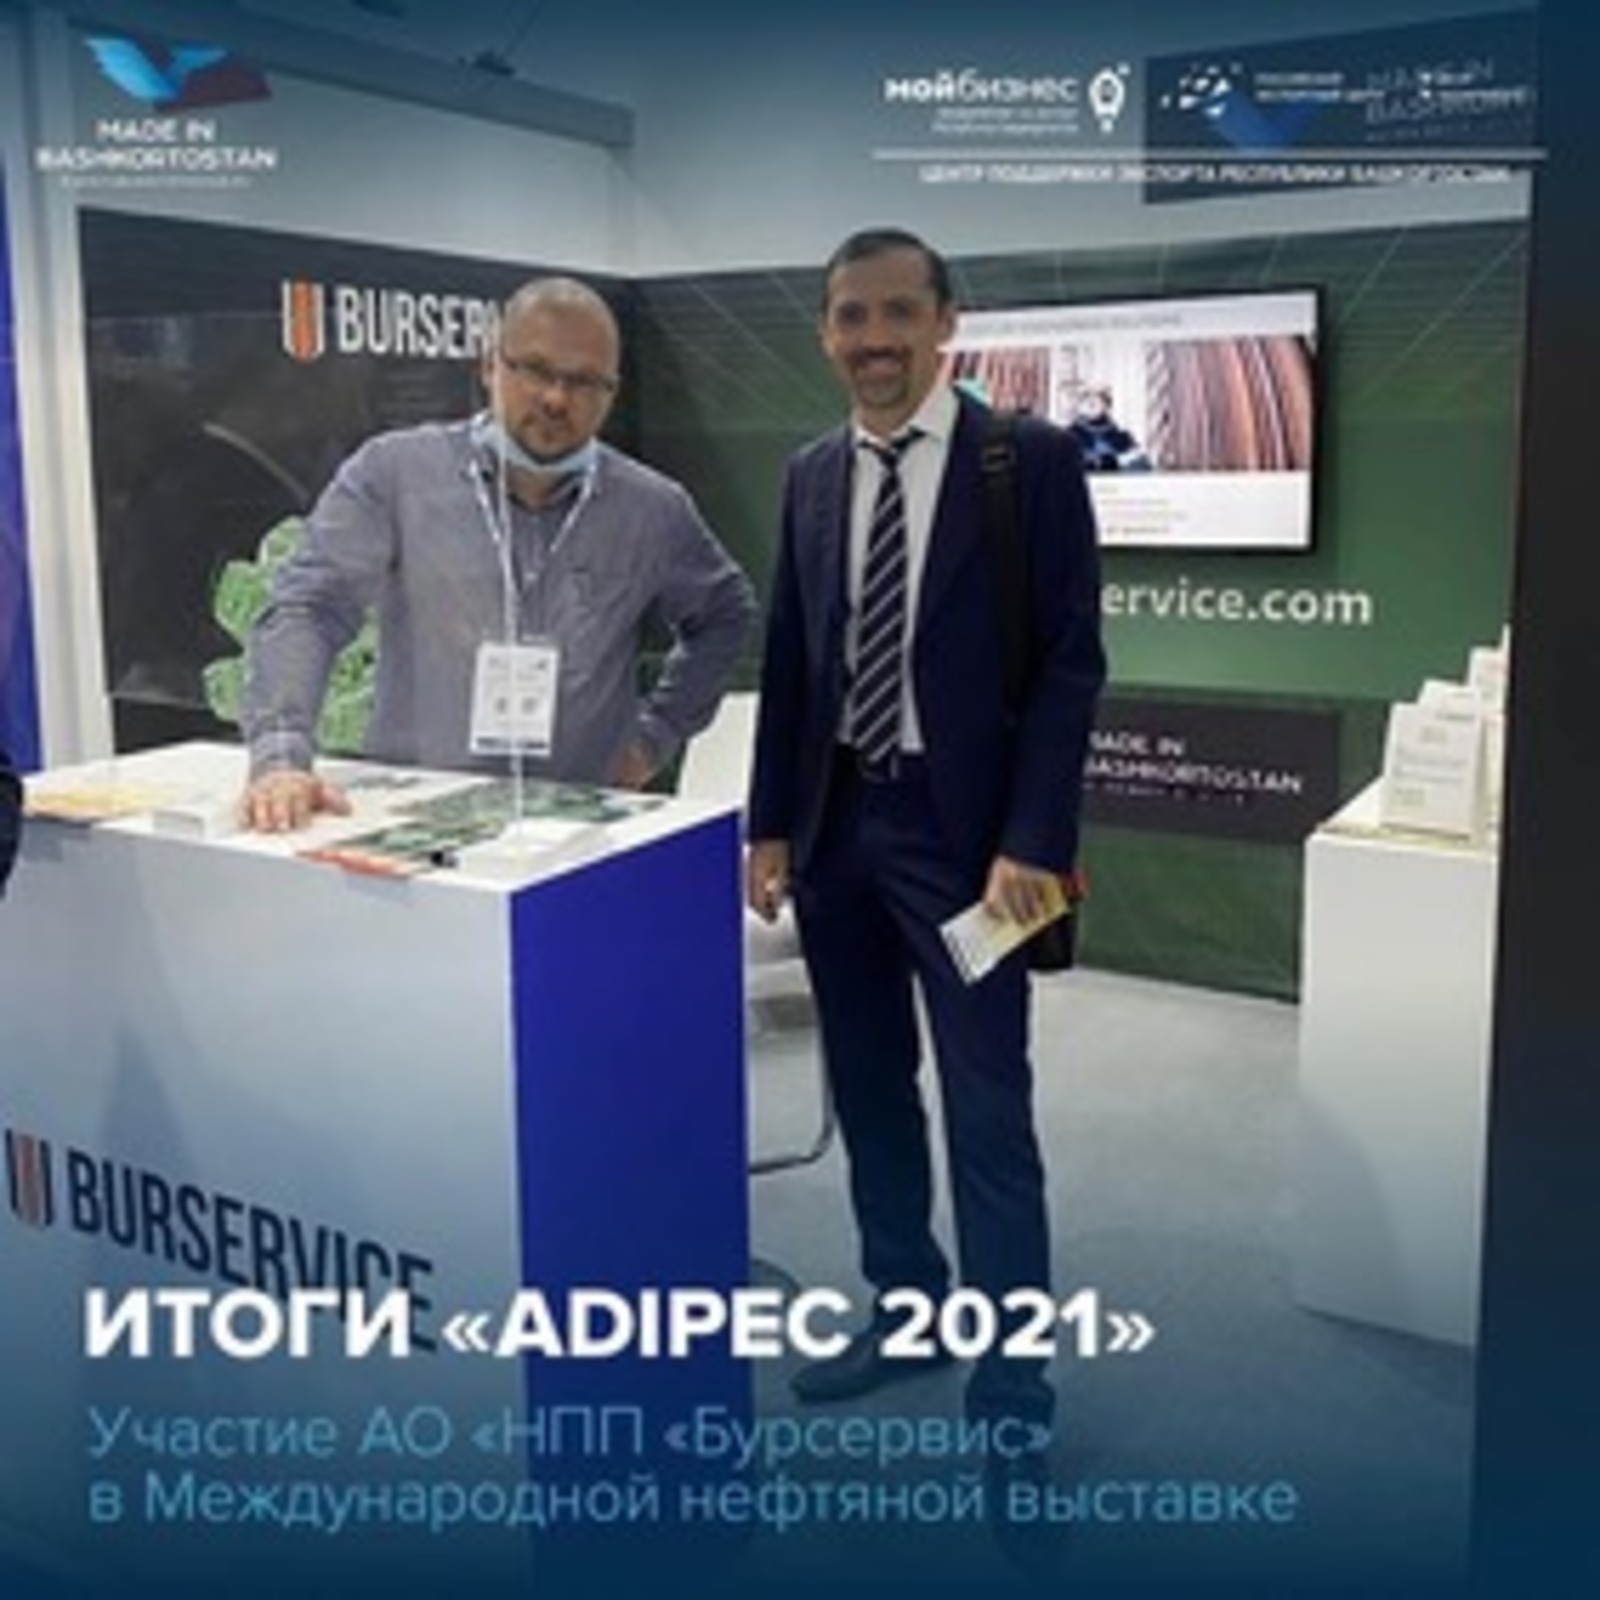 Итоги участия в Международной нефтяной выставке ADIPEC 2021